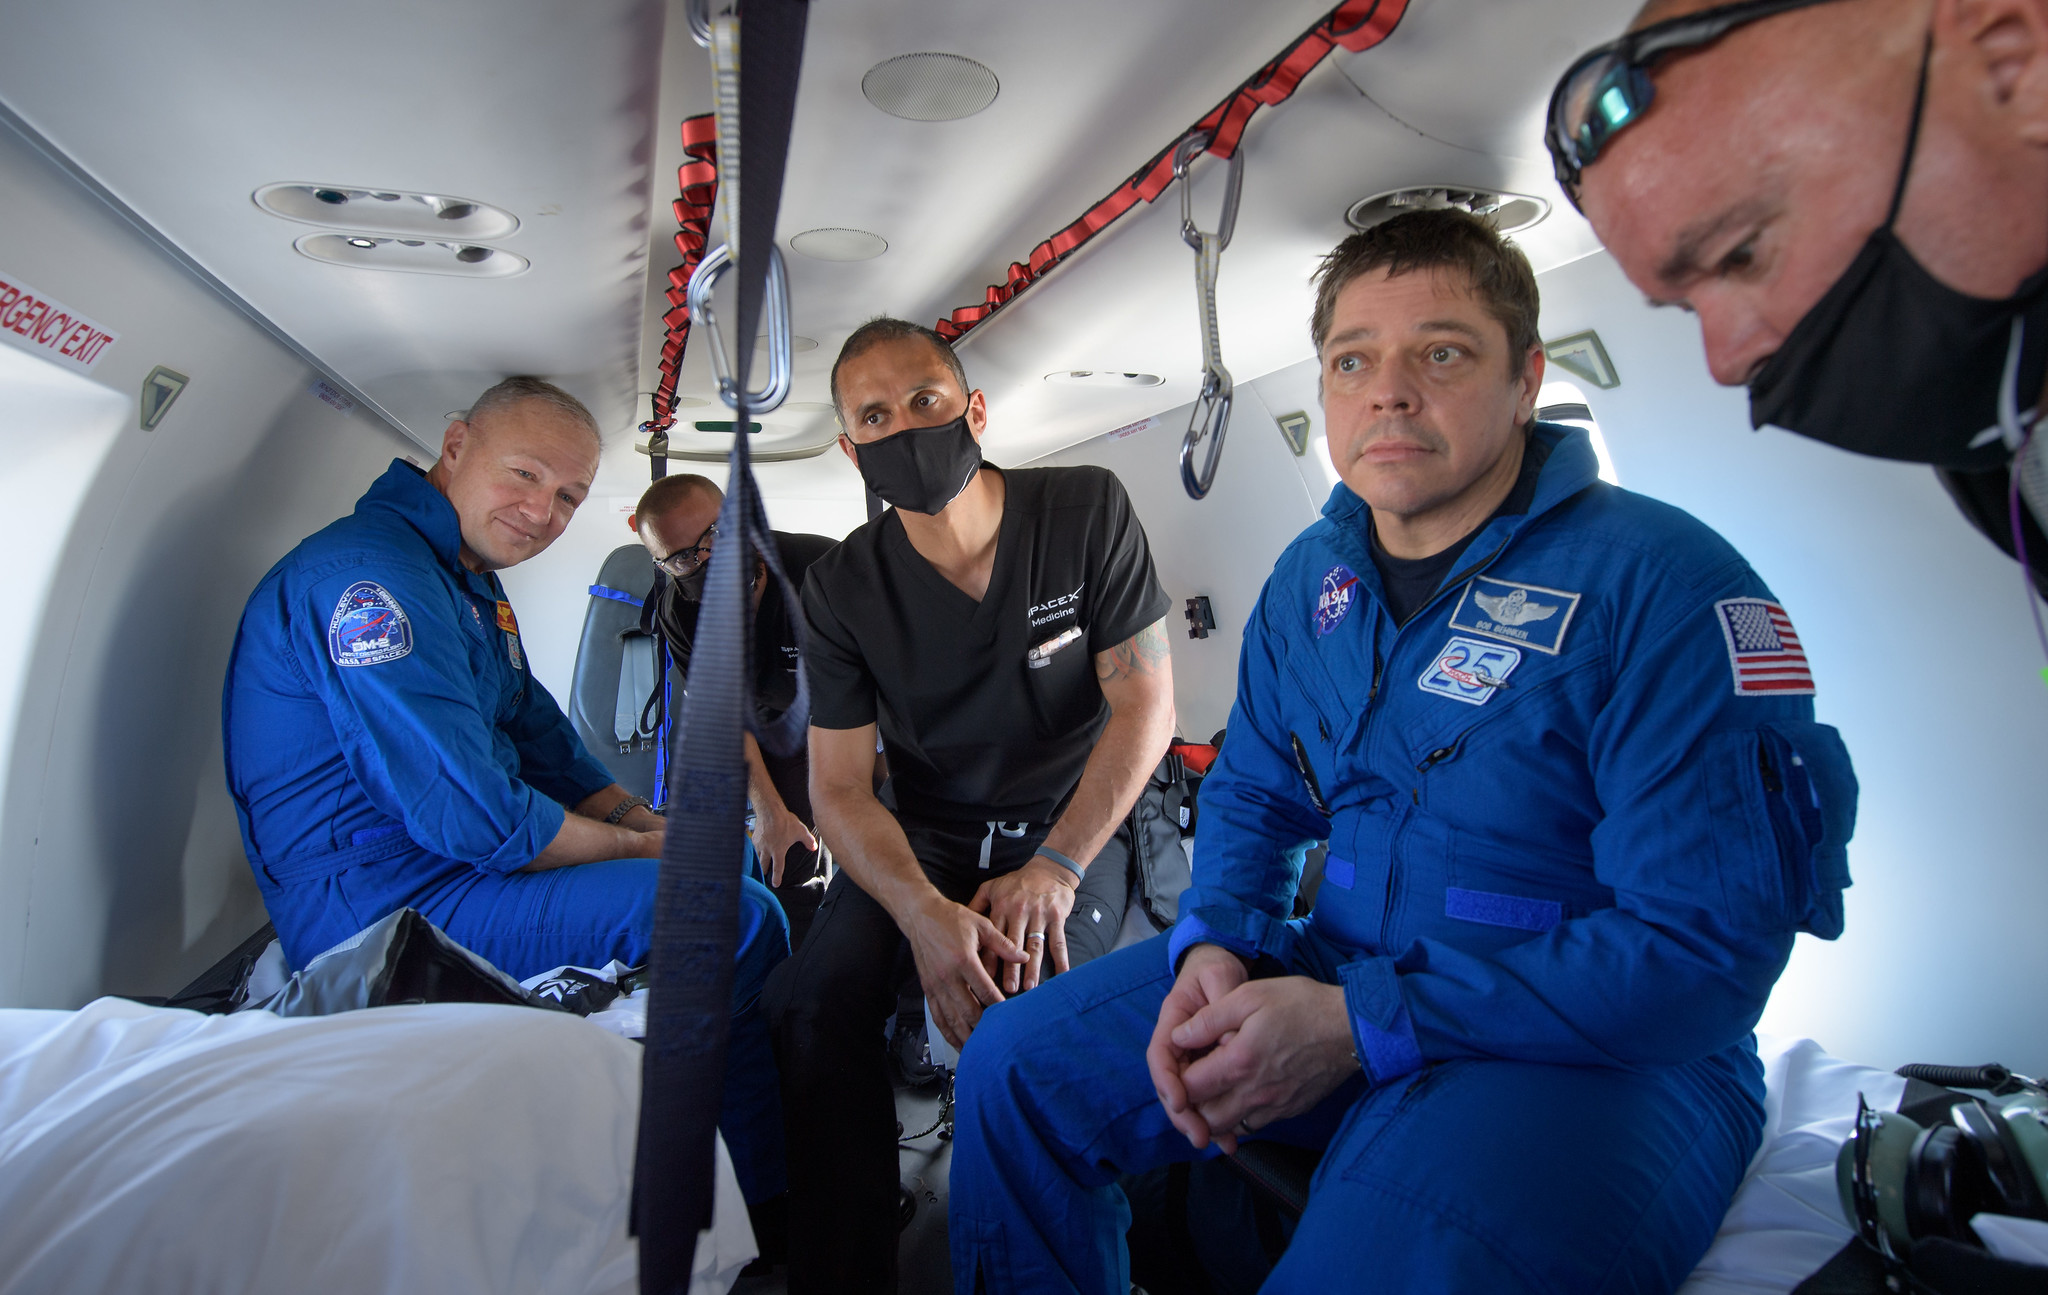 Фото: як відбувалася посадка модуля Crew Dragon в океані